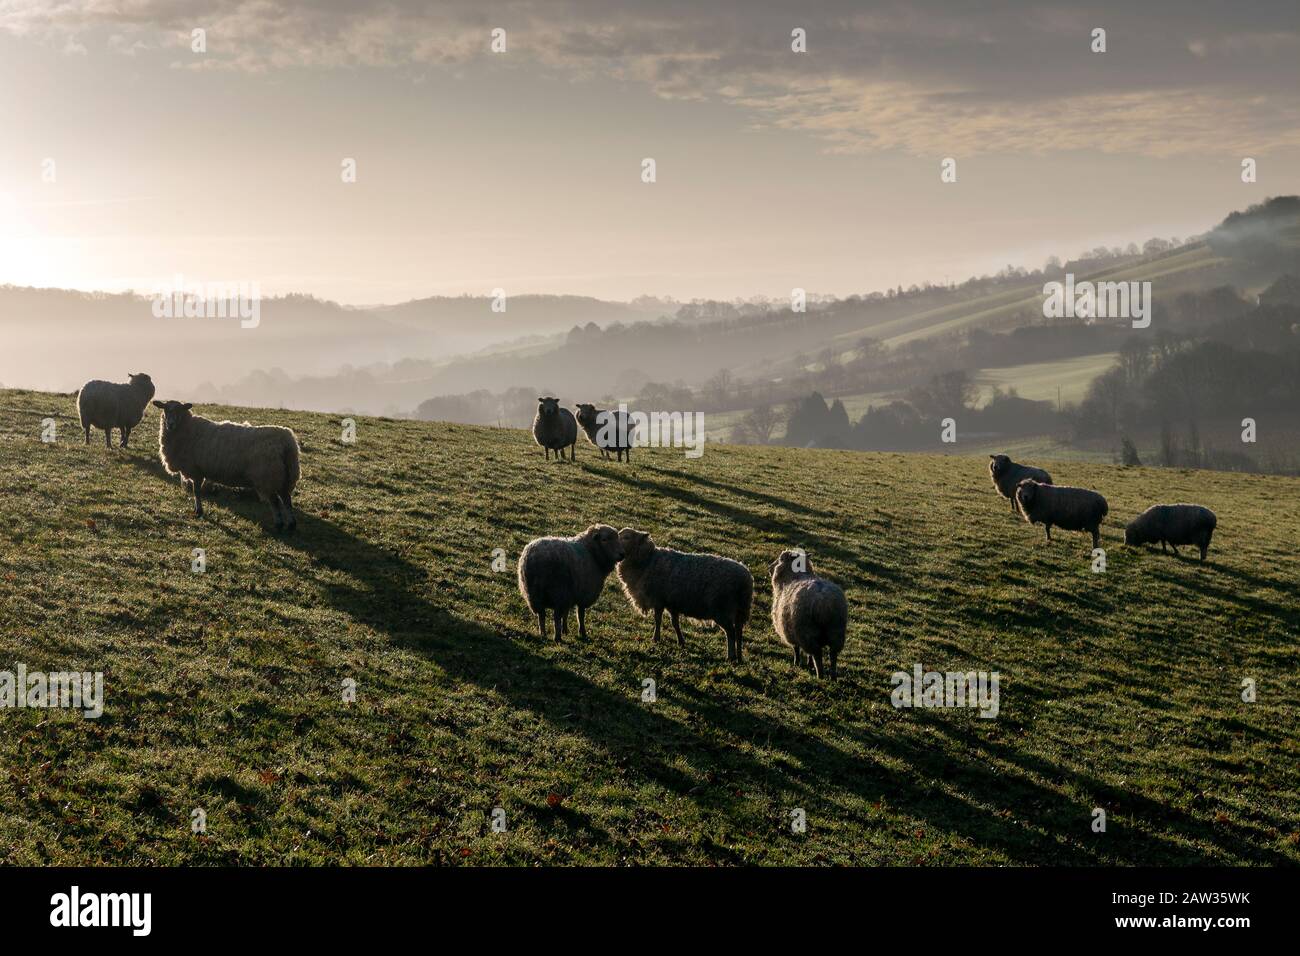 Misty Fields in der Nähe von Dunsford, einem Dorf in Devon, Dreschen der Bodenbearbeitung agronomics Crop-hoising, Geoponics, Share-cropping, Bodenkultur, Stockfoto